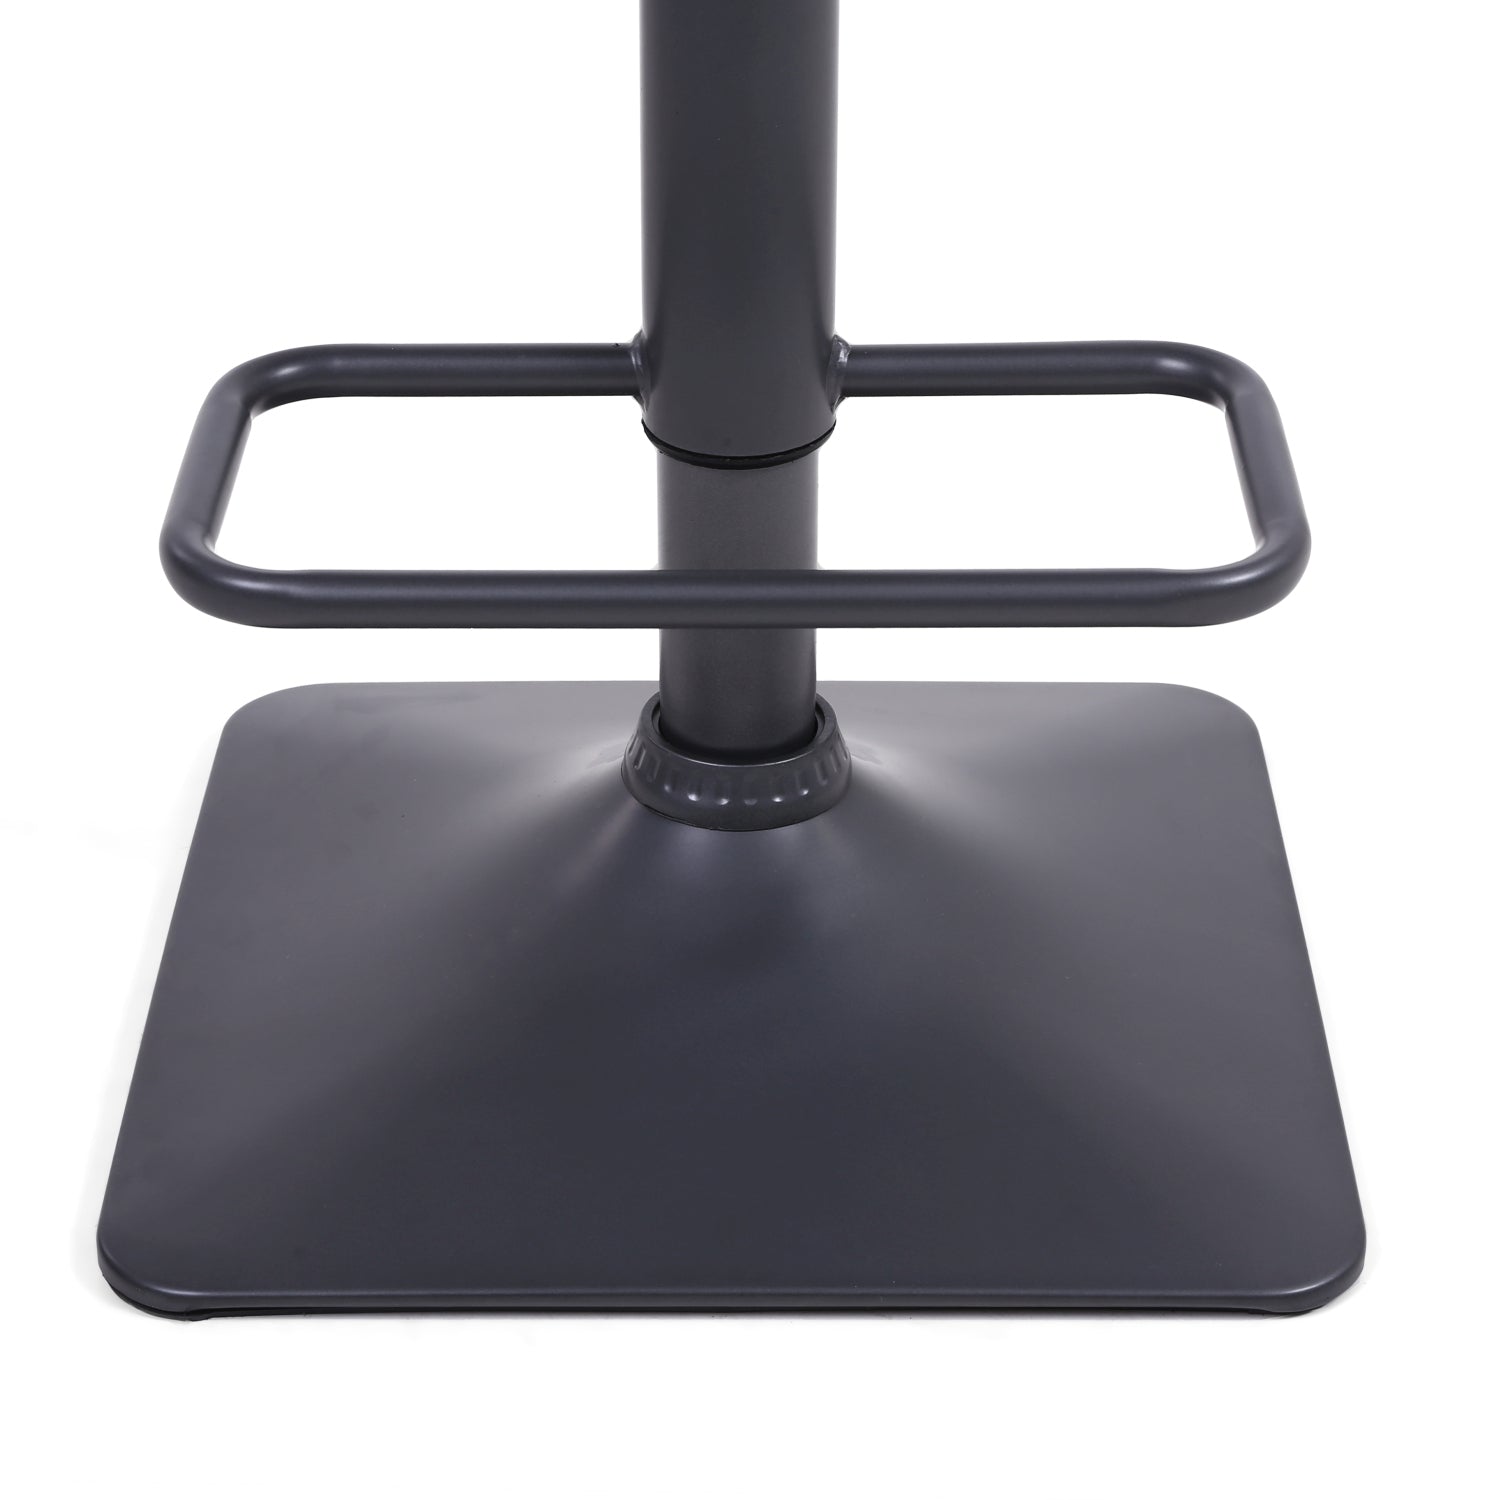 Orion adjustable bar stool from Top Secret Furniture